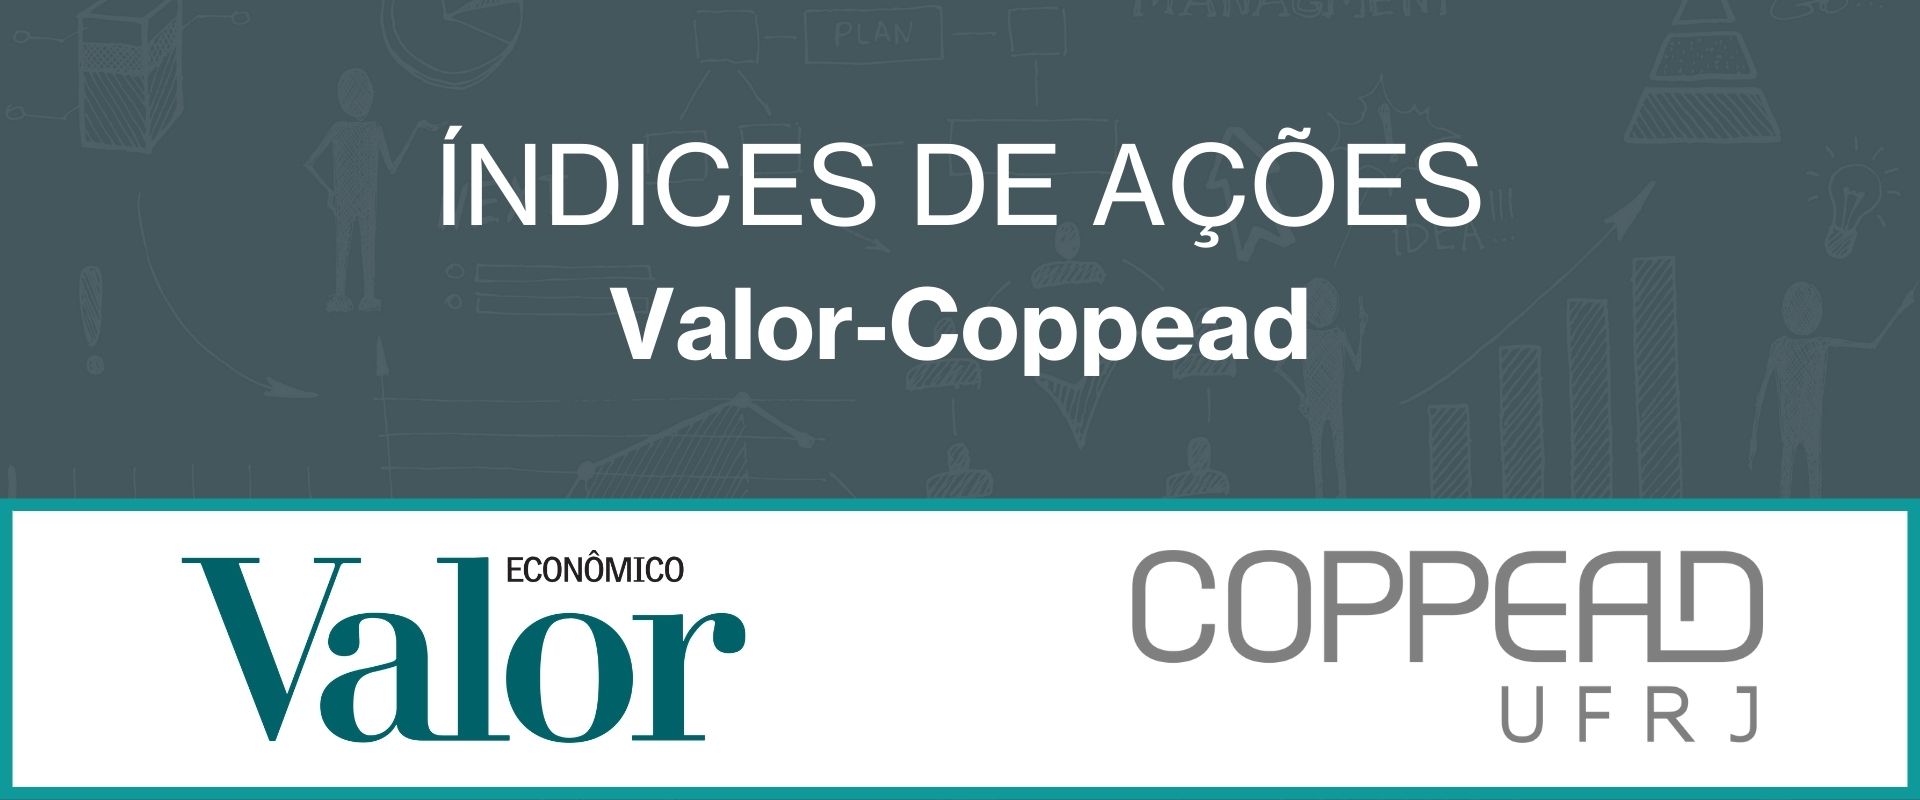 Índices Valor-Coppead lideram ranking de aplicações em março de 2022